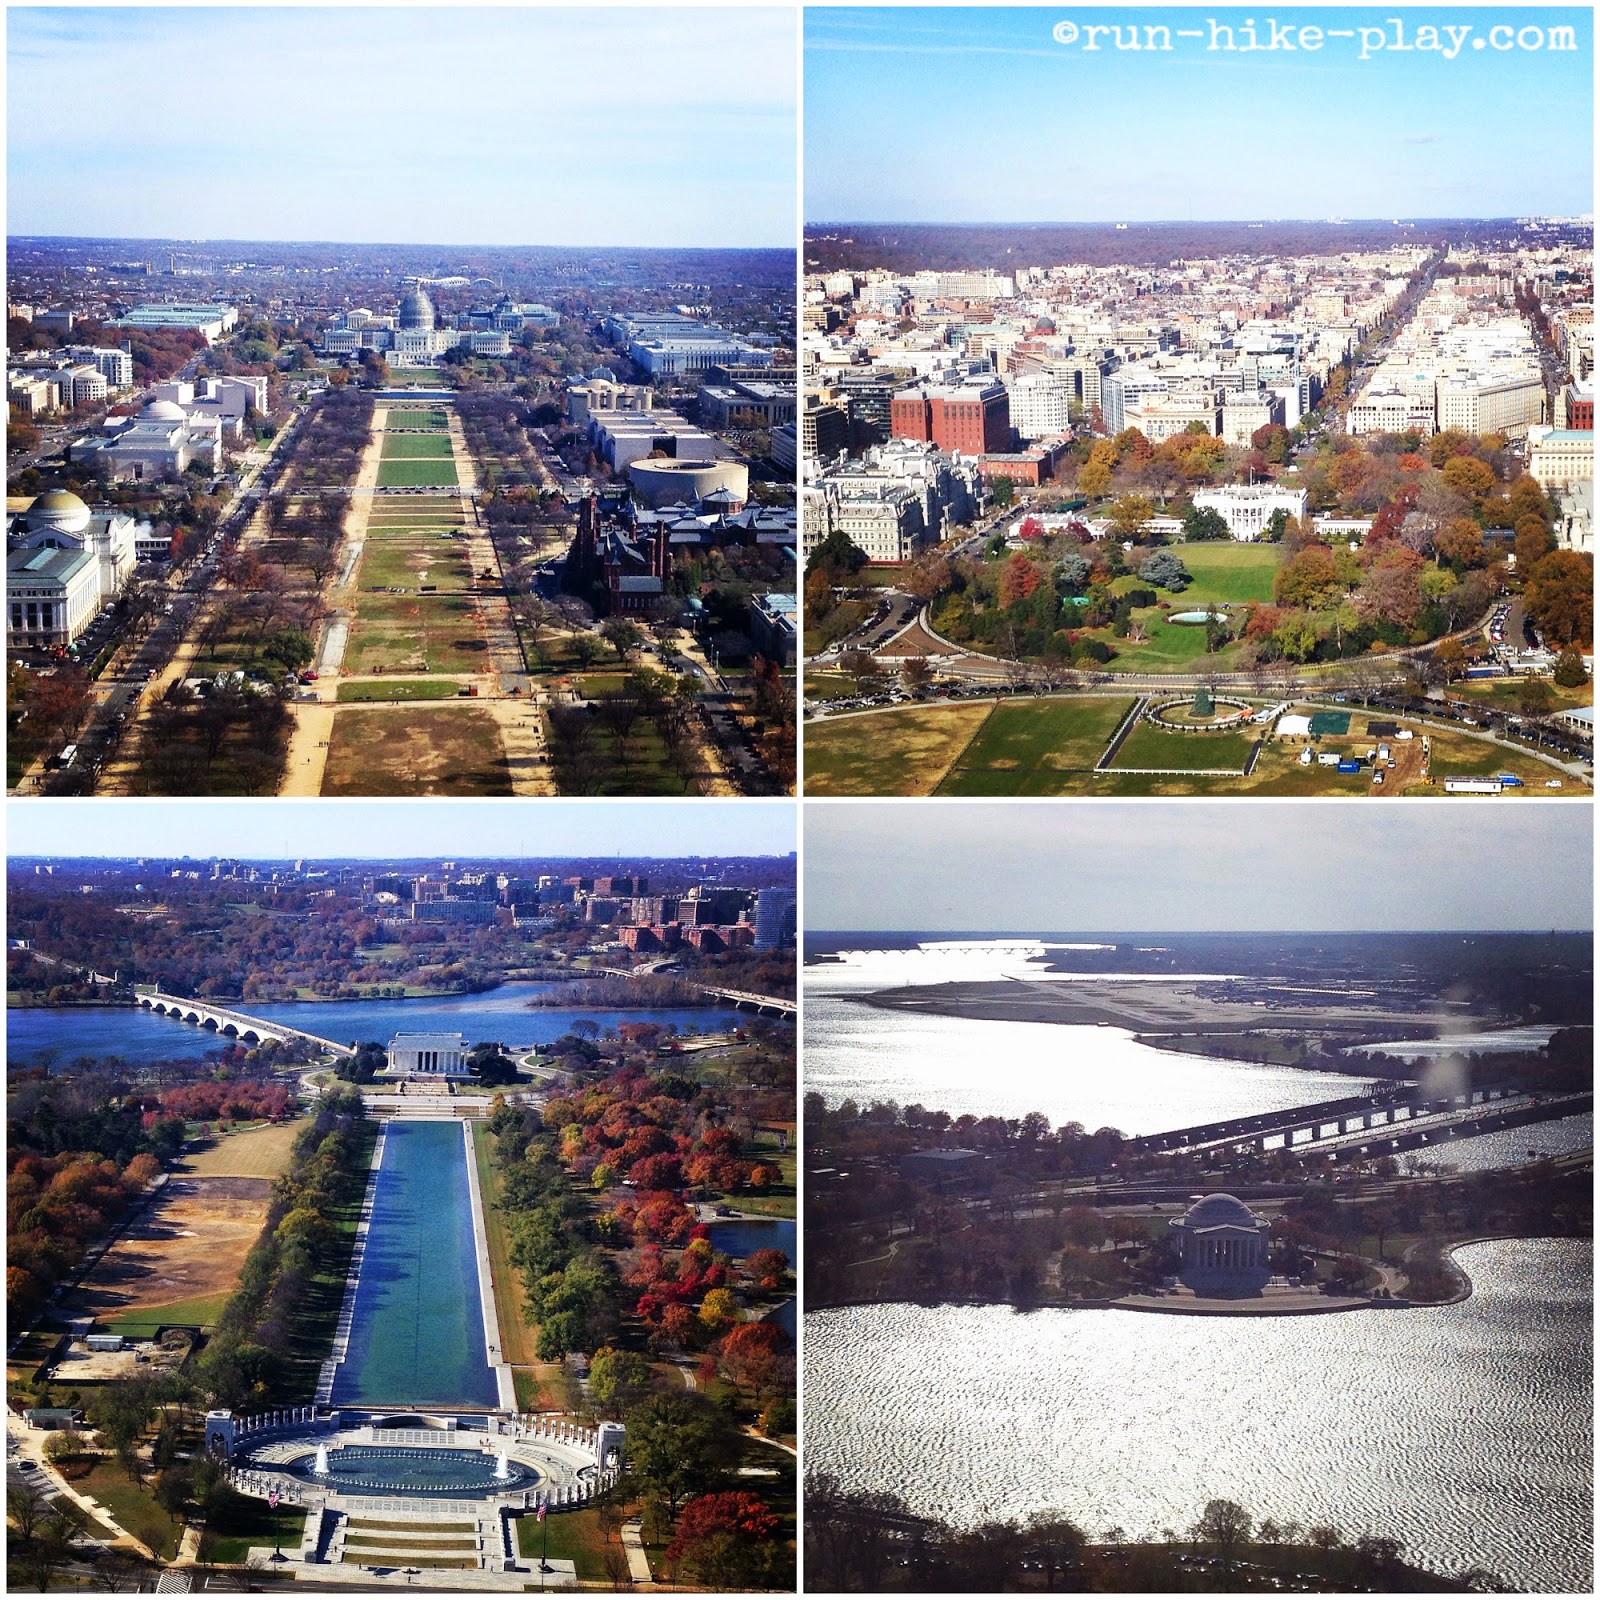 Washington Monument view